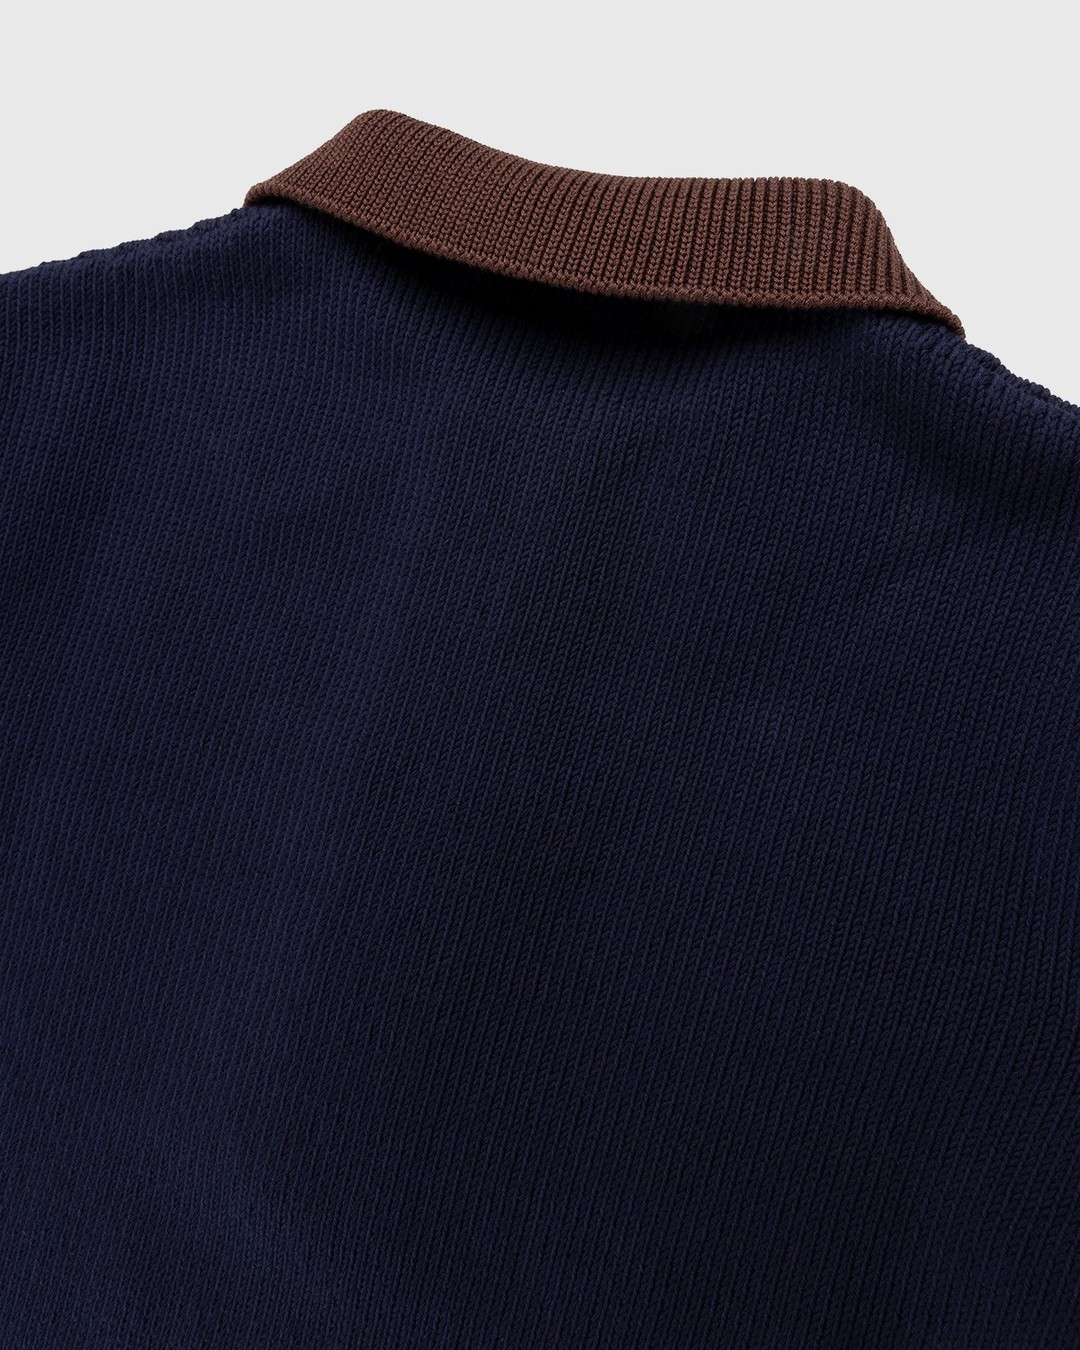 Jil Sander – Short Sleeve Knit Shirt Dark Blue - Polos - Blue - Image 3